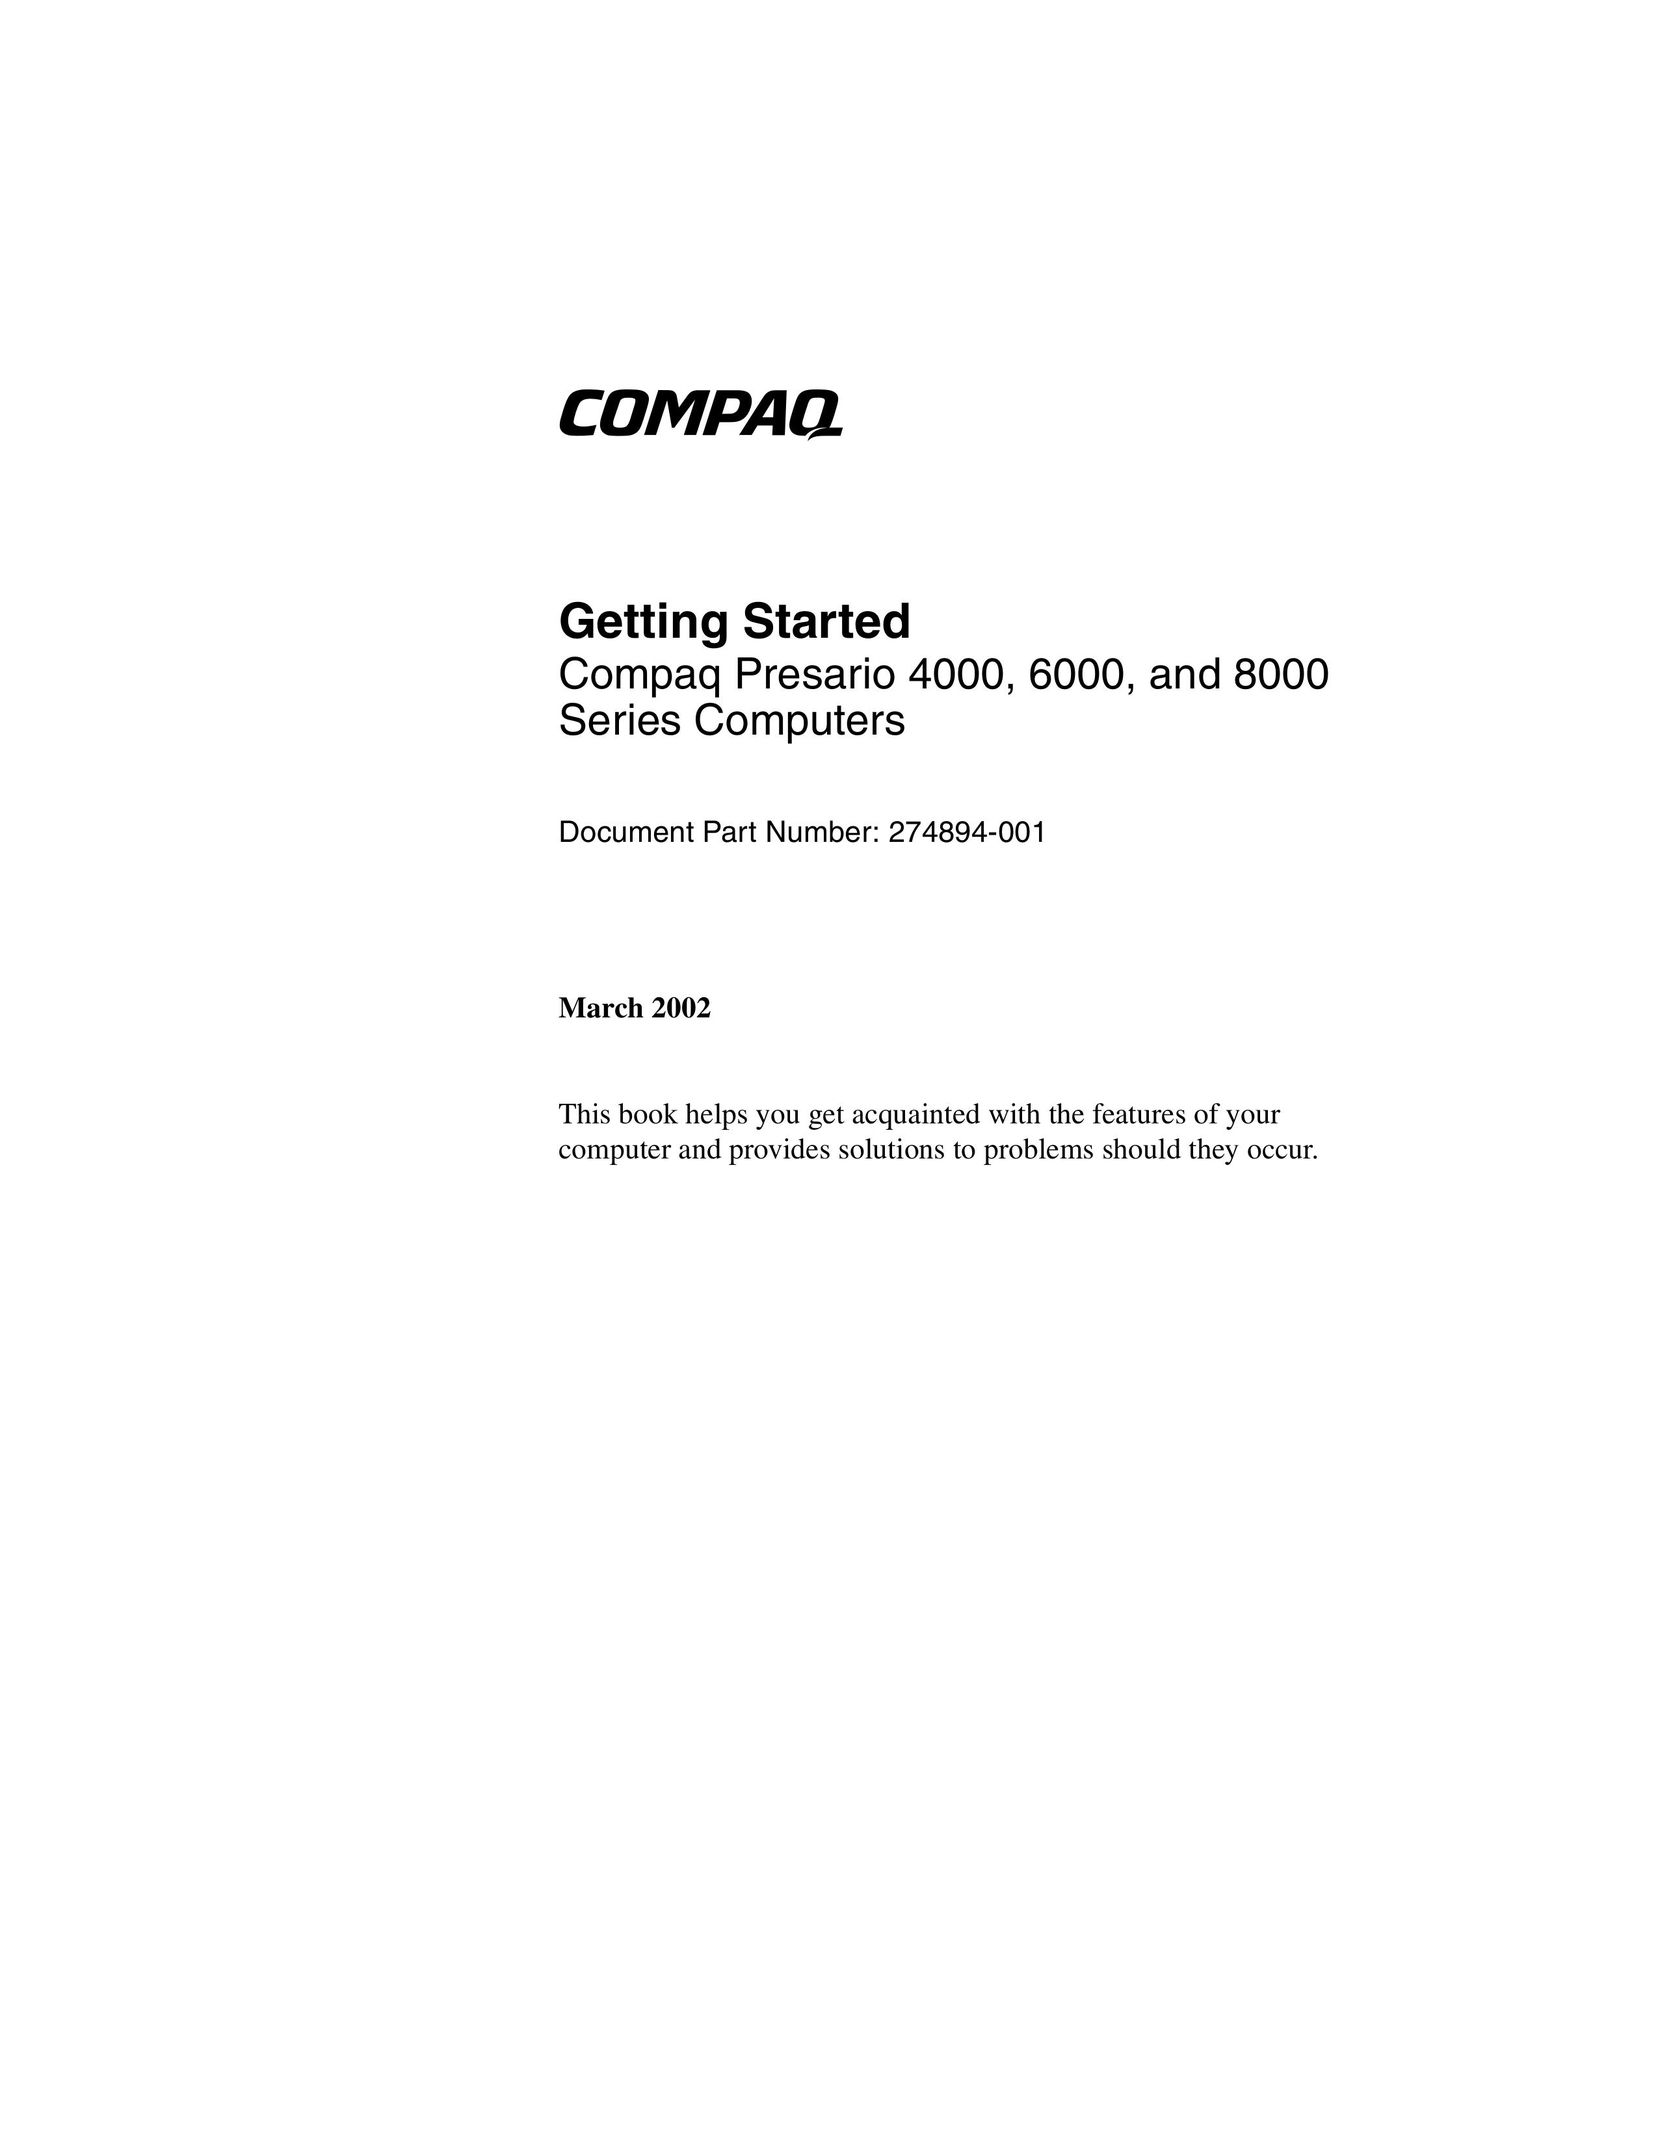 Compaq 4000 Personal Computer User Manual